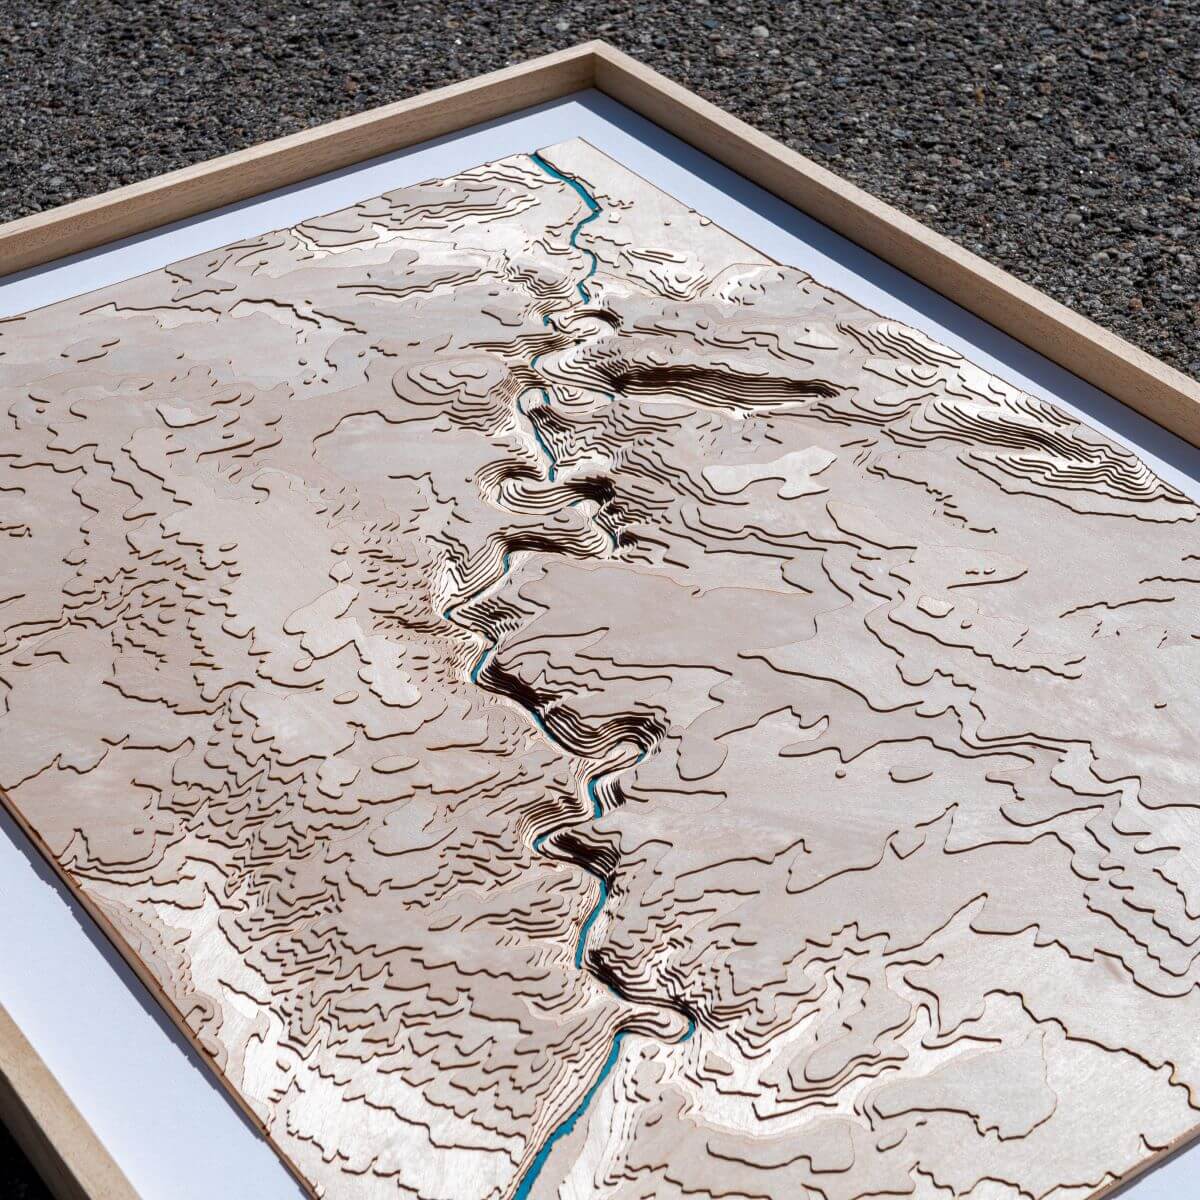 Détails du relief de la carte des gorges de l'Ardèche en bois